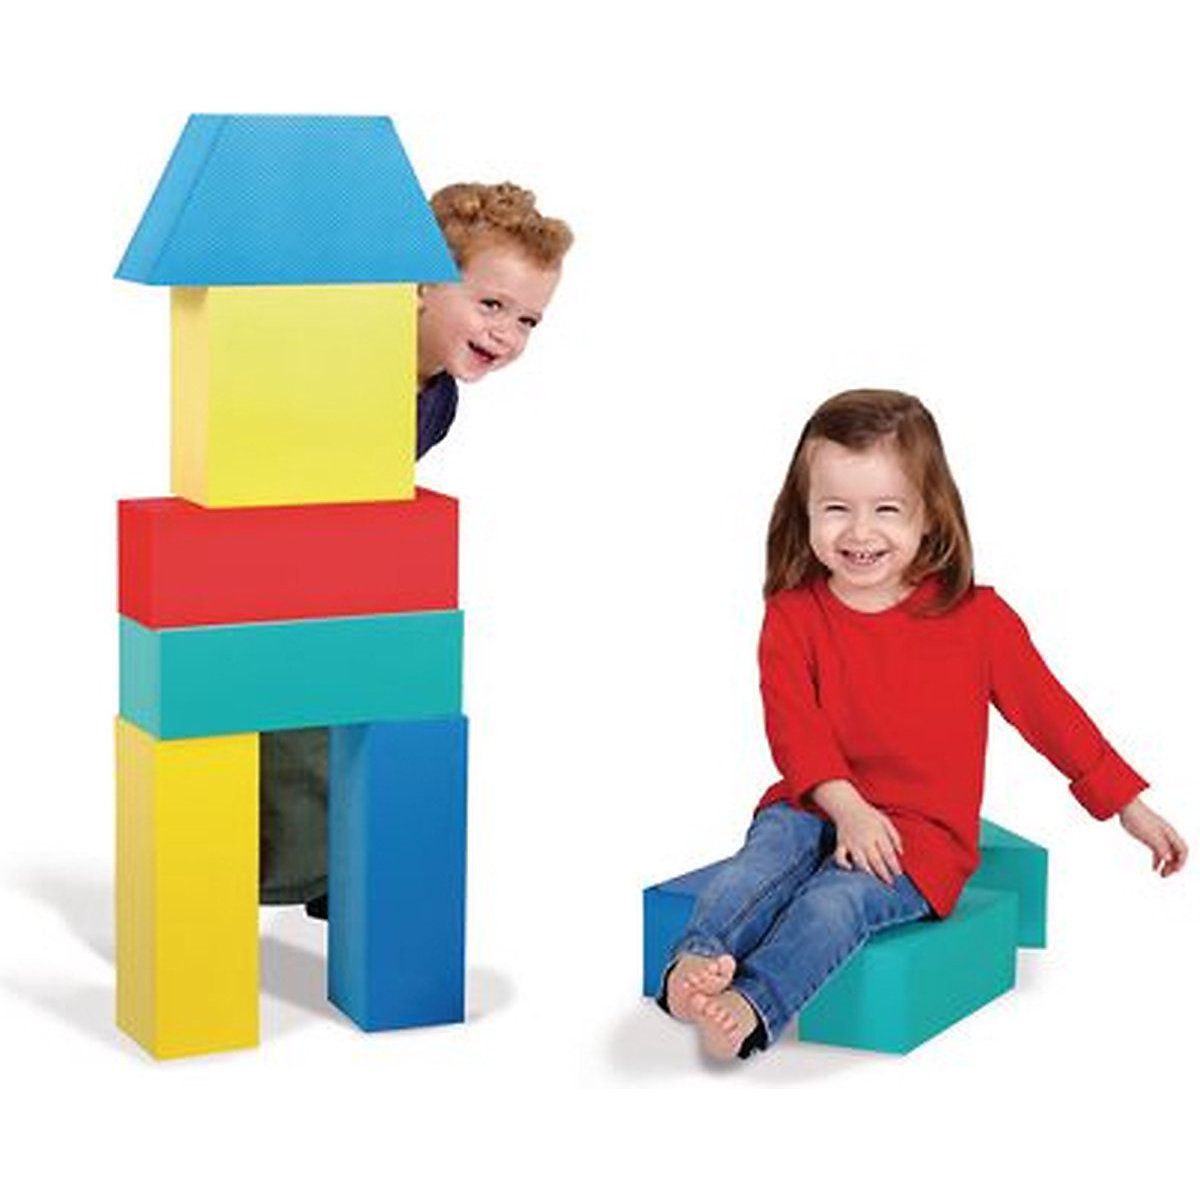 Toys 32. Гигантские кубики для детей. Гигантские кубики блоки. Edushape 1326069 текстурированная блоки. Как сделать гиганта из кубиков.